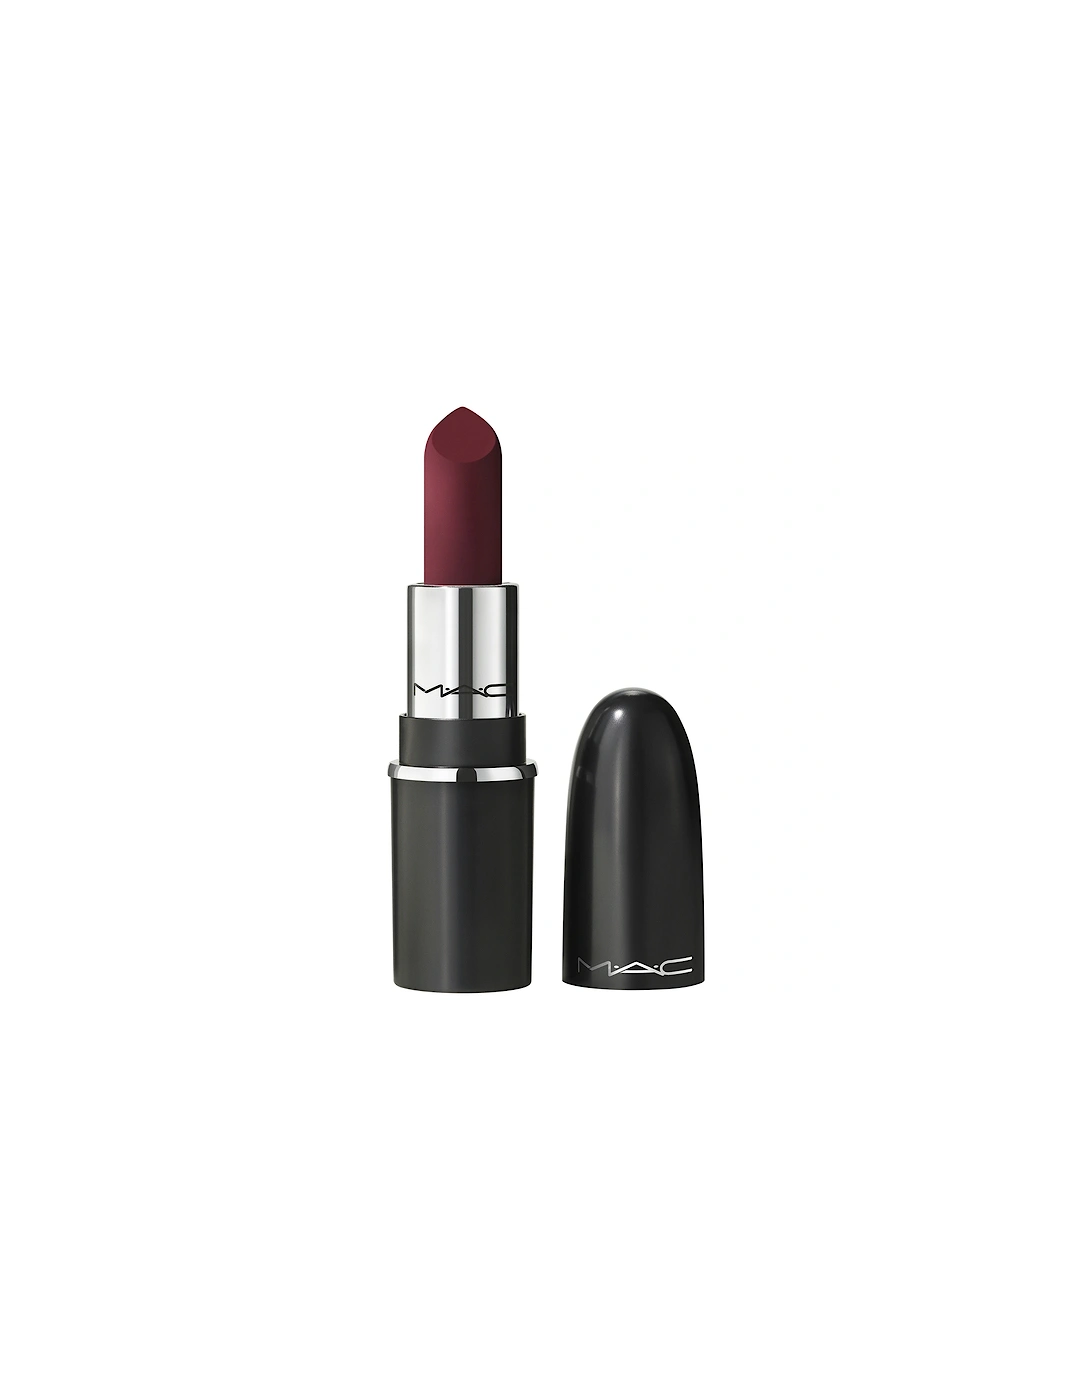 Macximal Silky Matte Mini Lipstick - Diva, 2 of 1